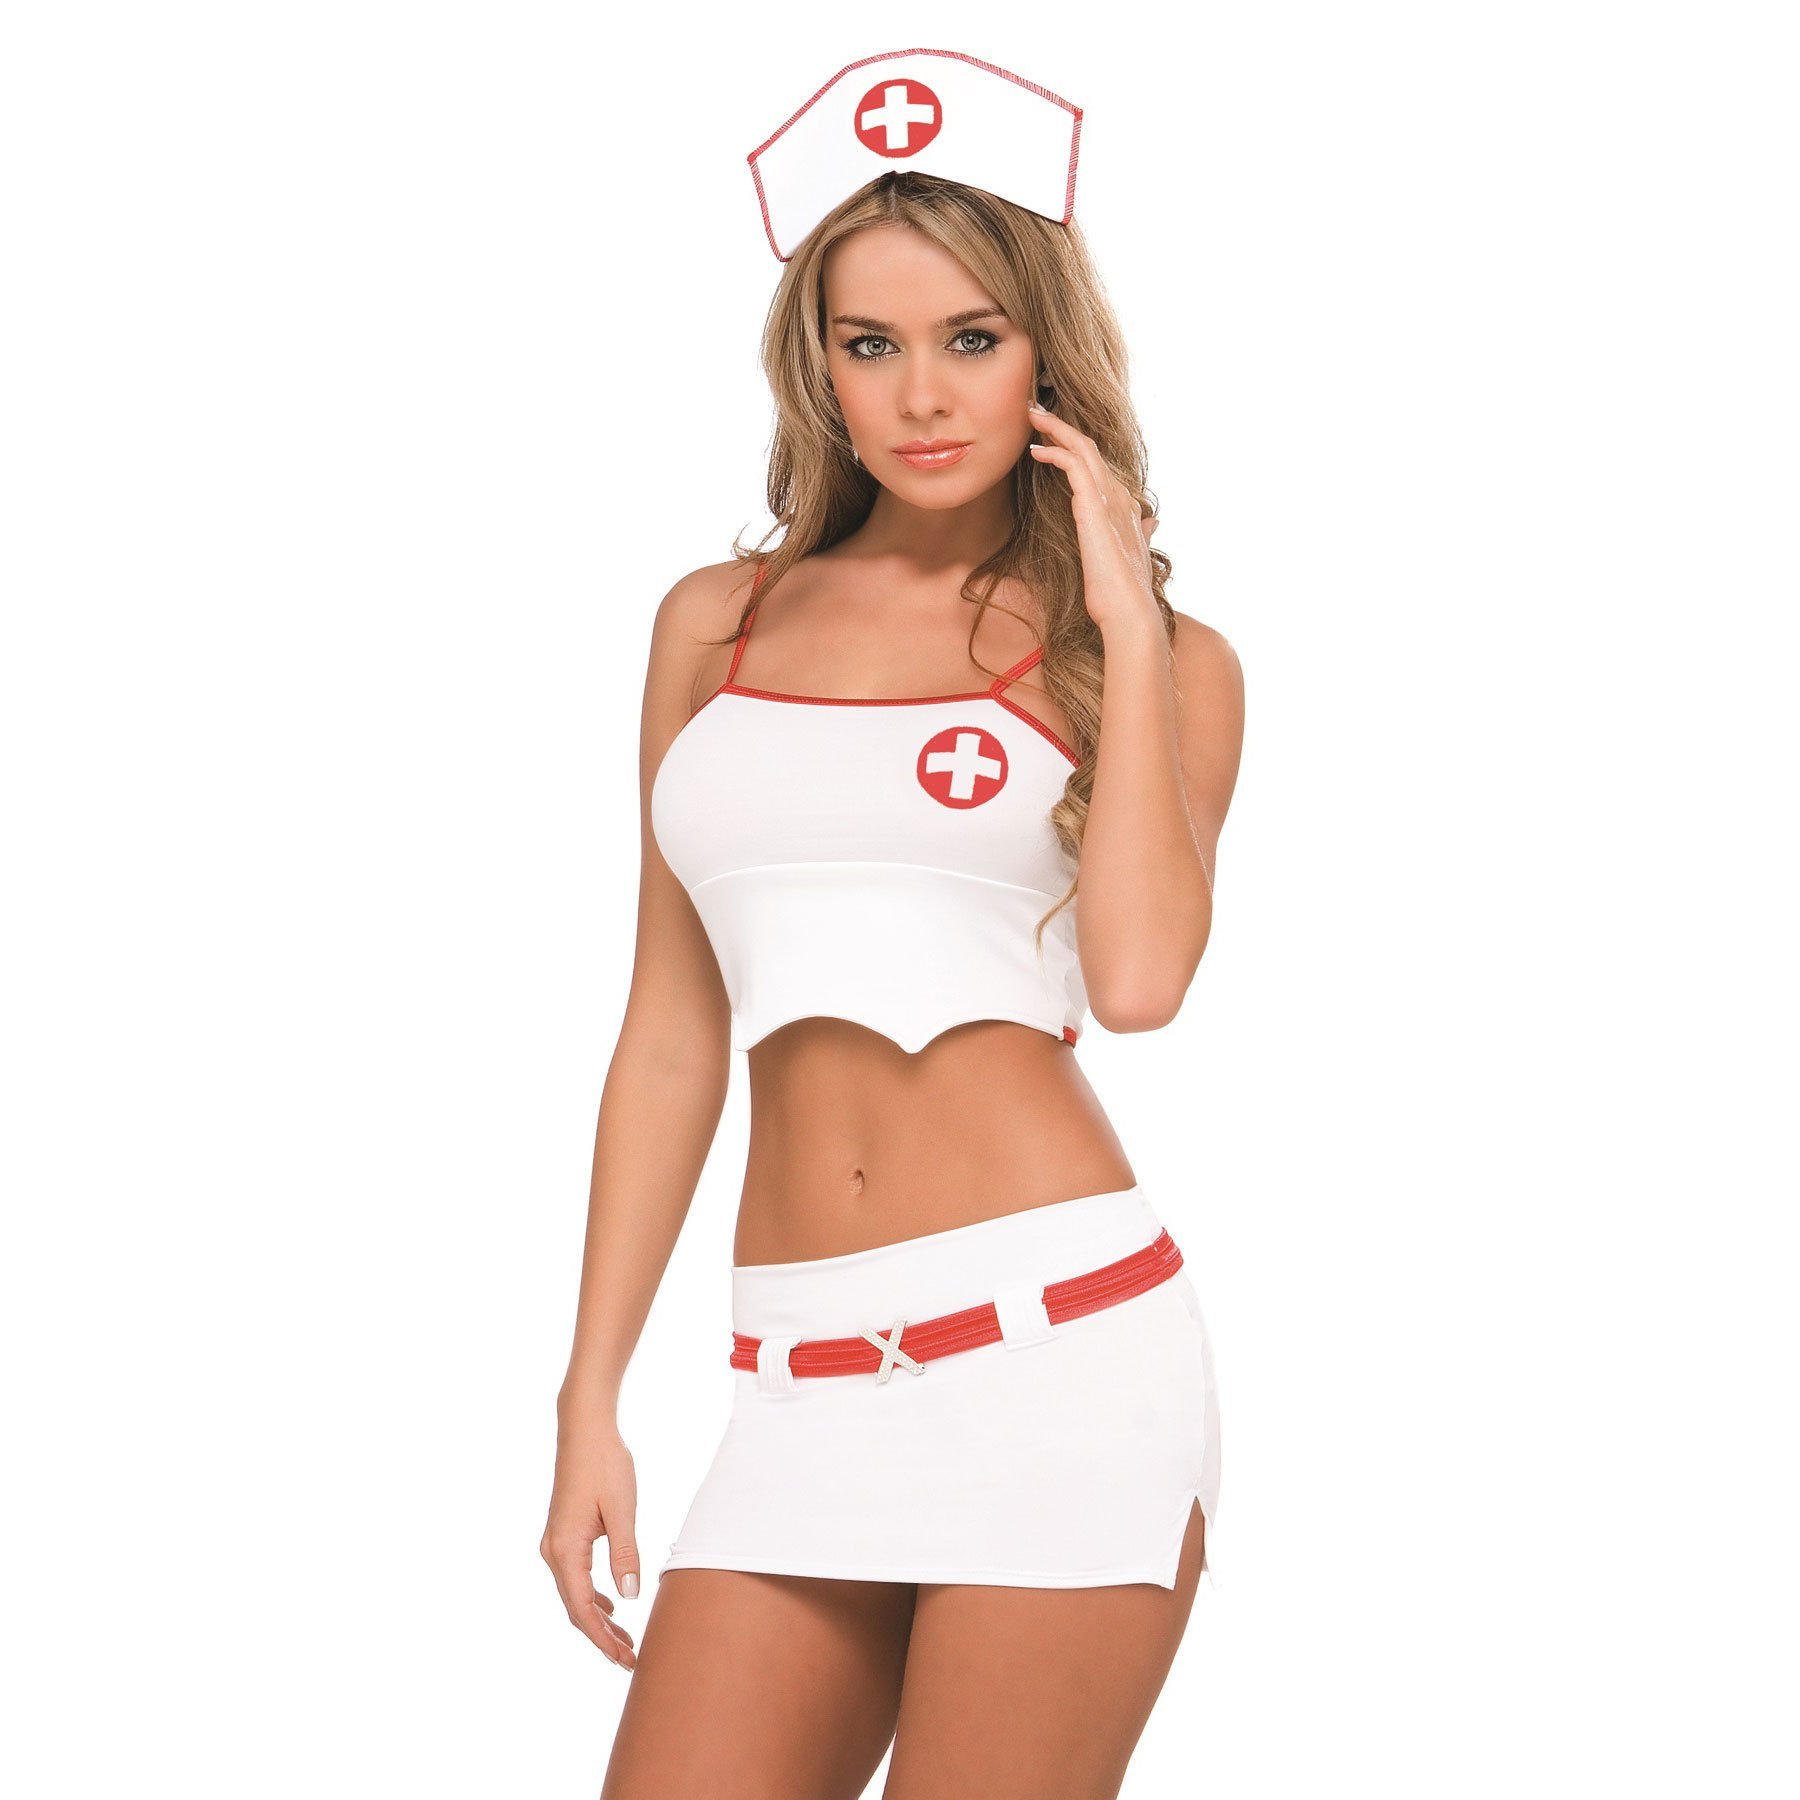 Hot nurse twitter